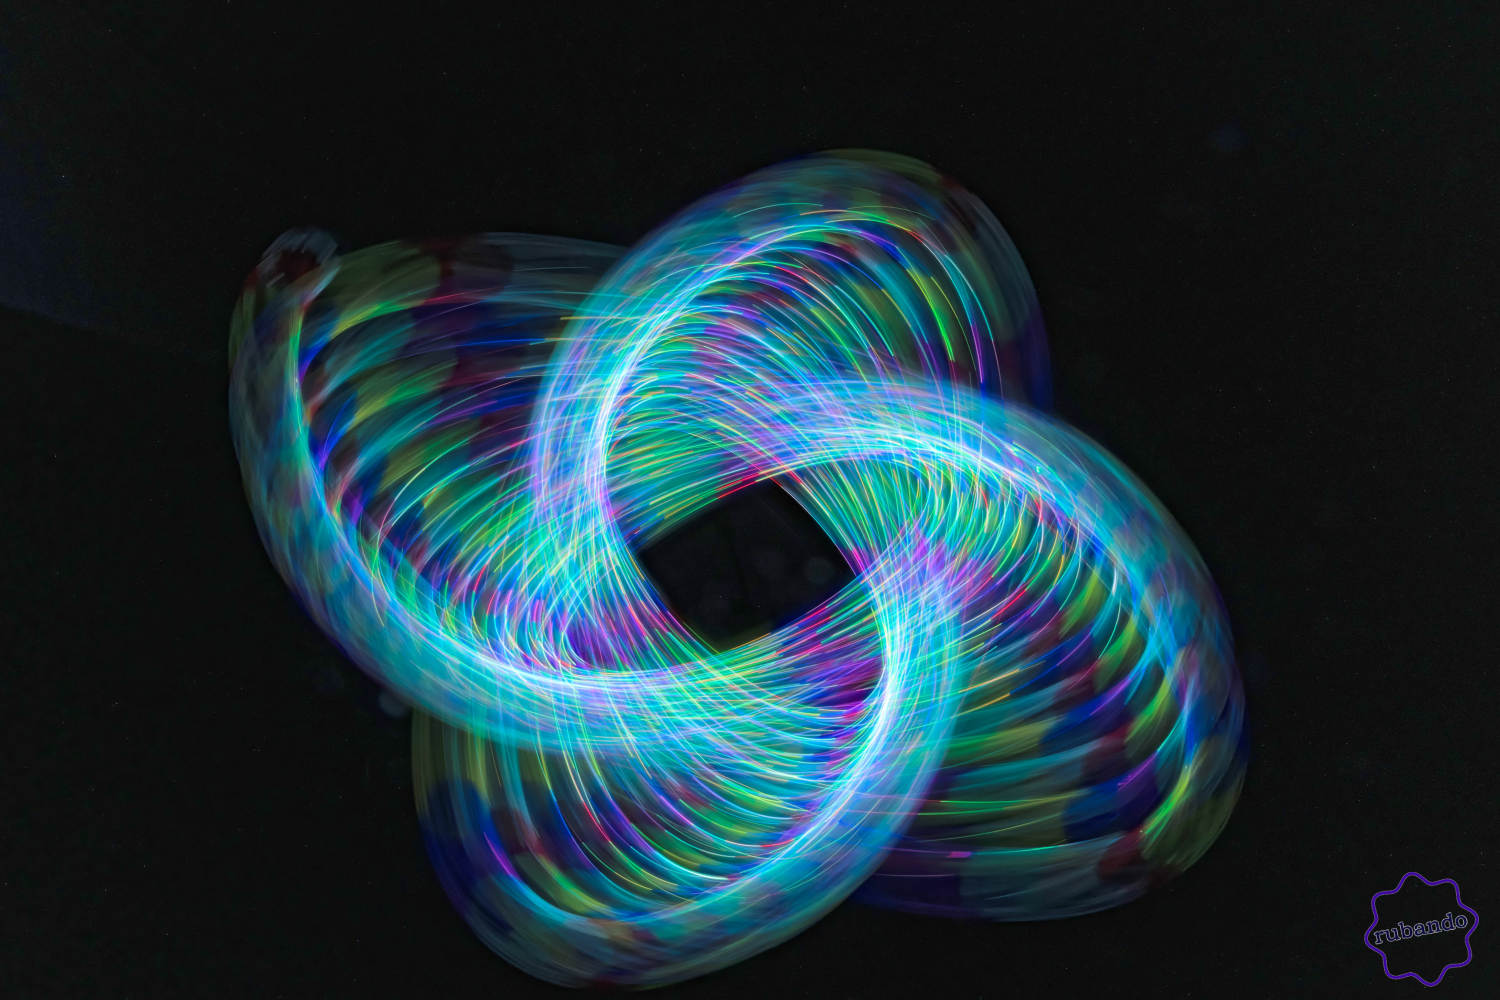 Lichtspirale.jpg Spielerei mit LED-Lichtern